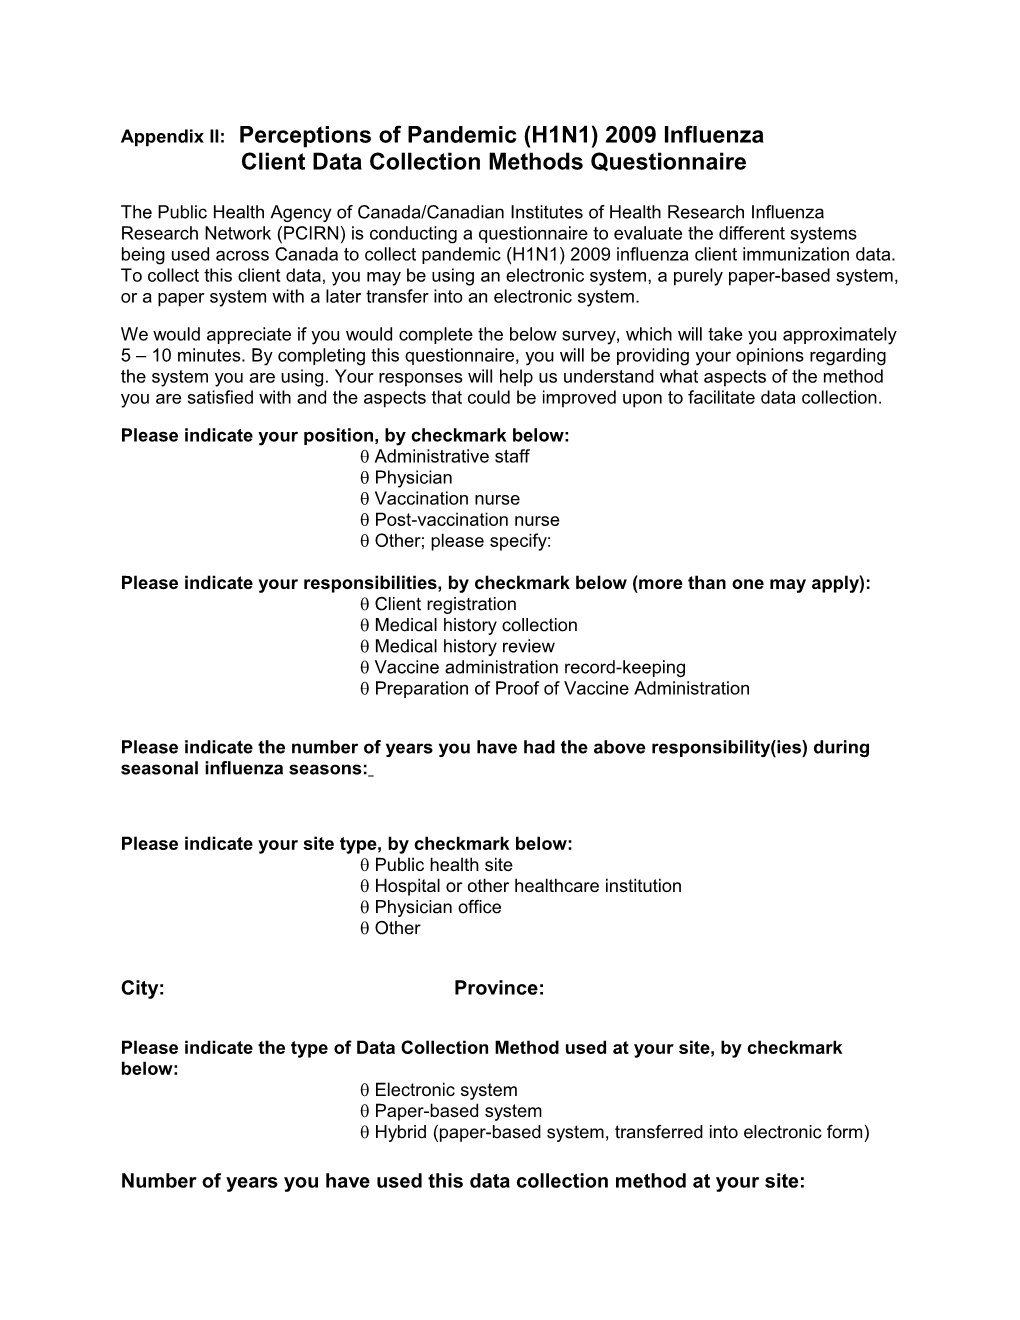 Client Data Collection Methods Questionnaire